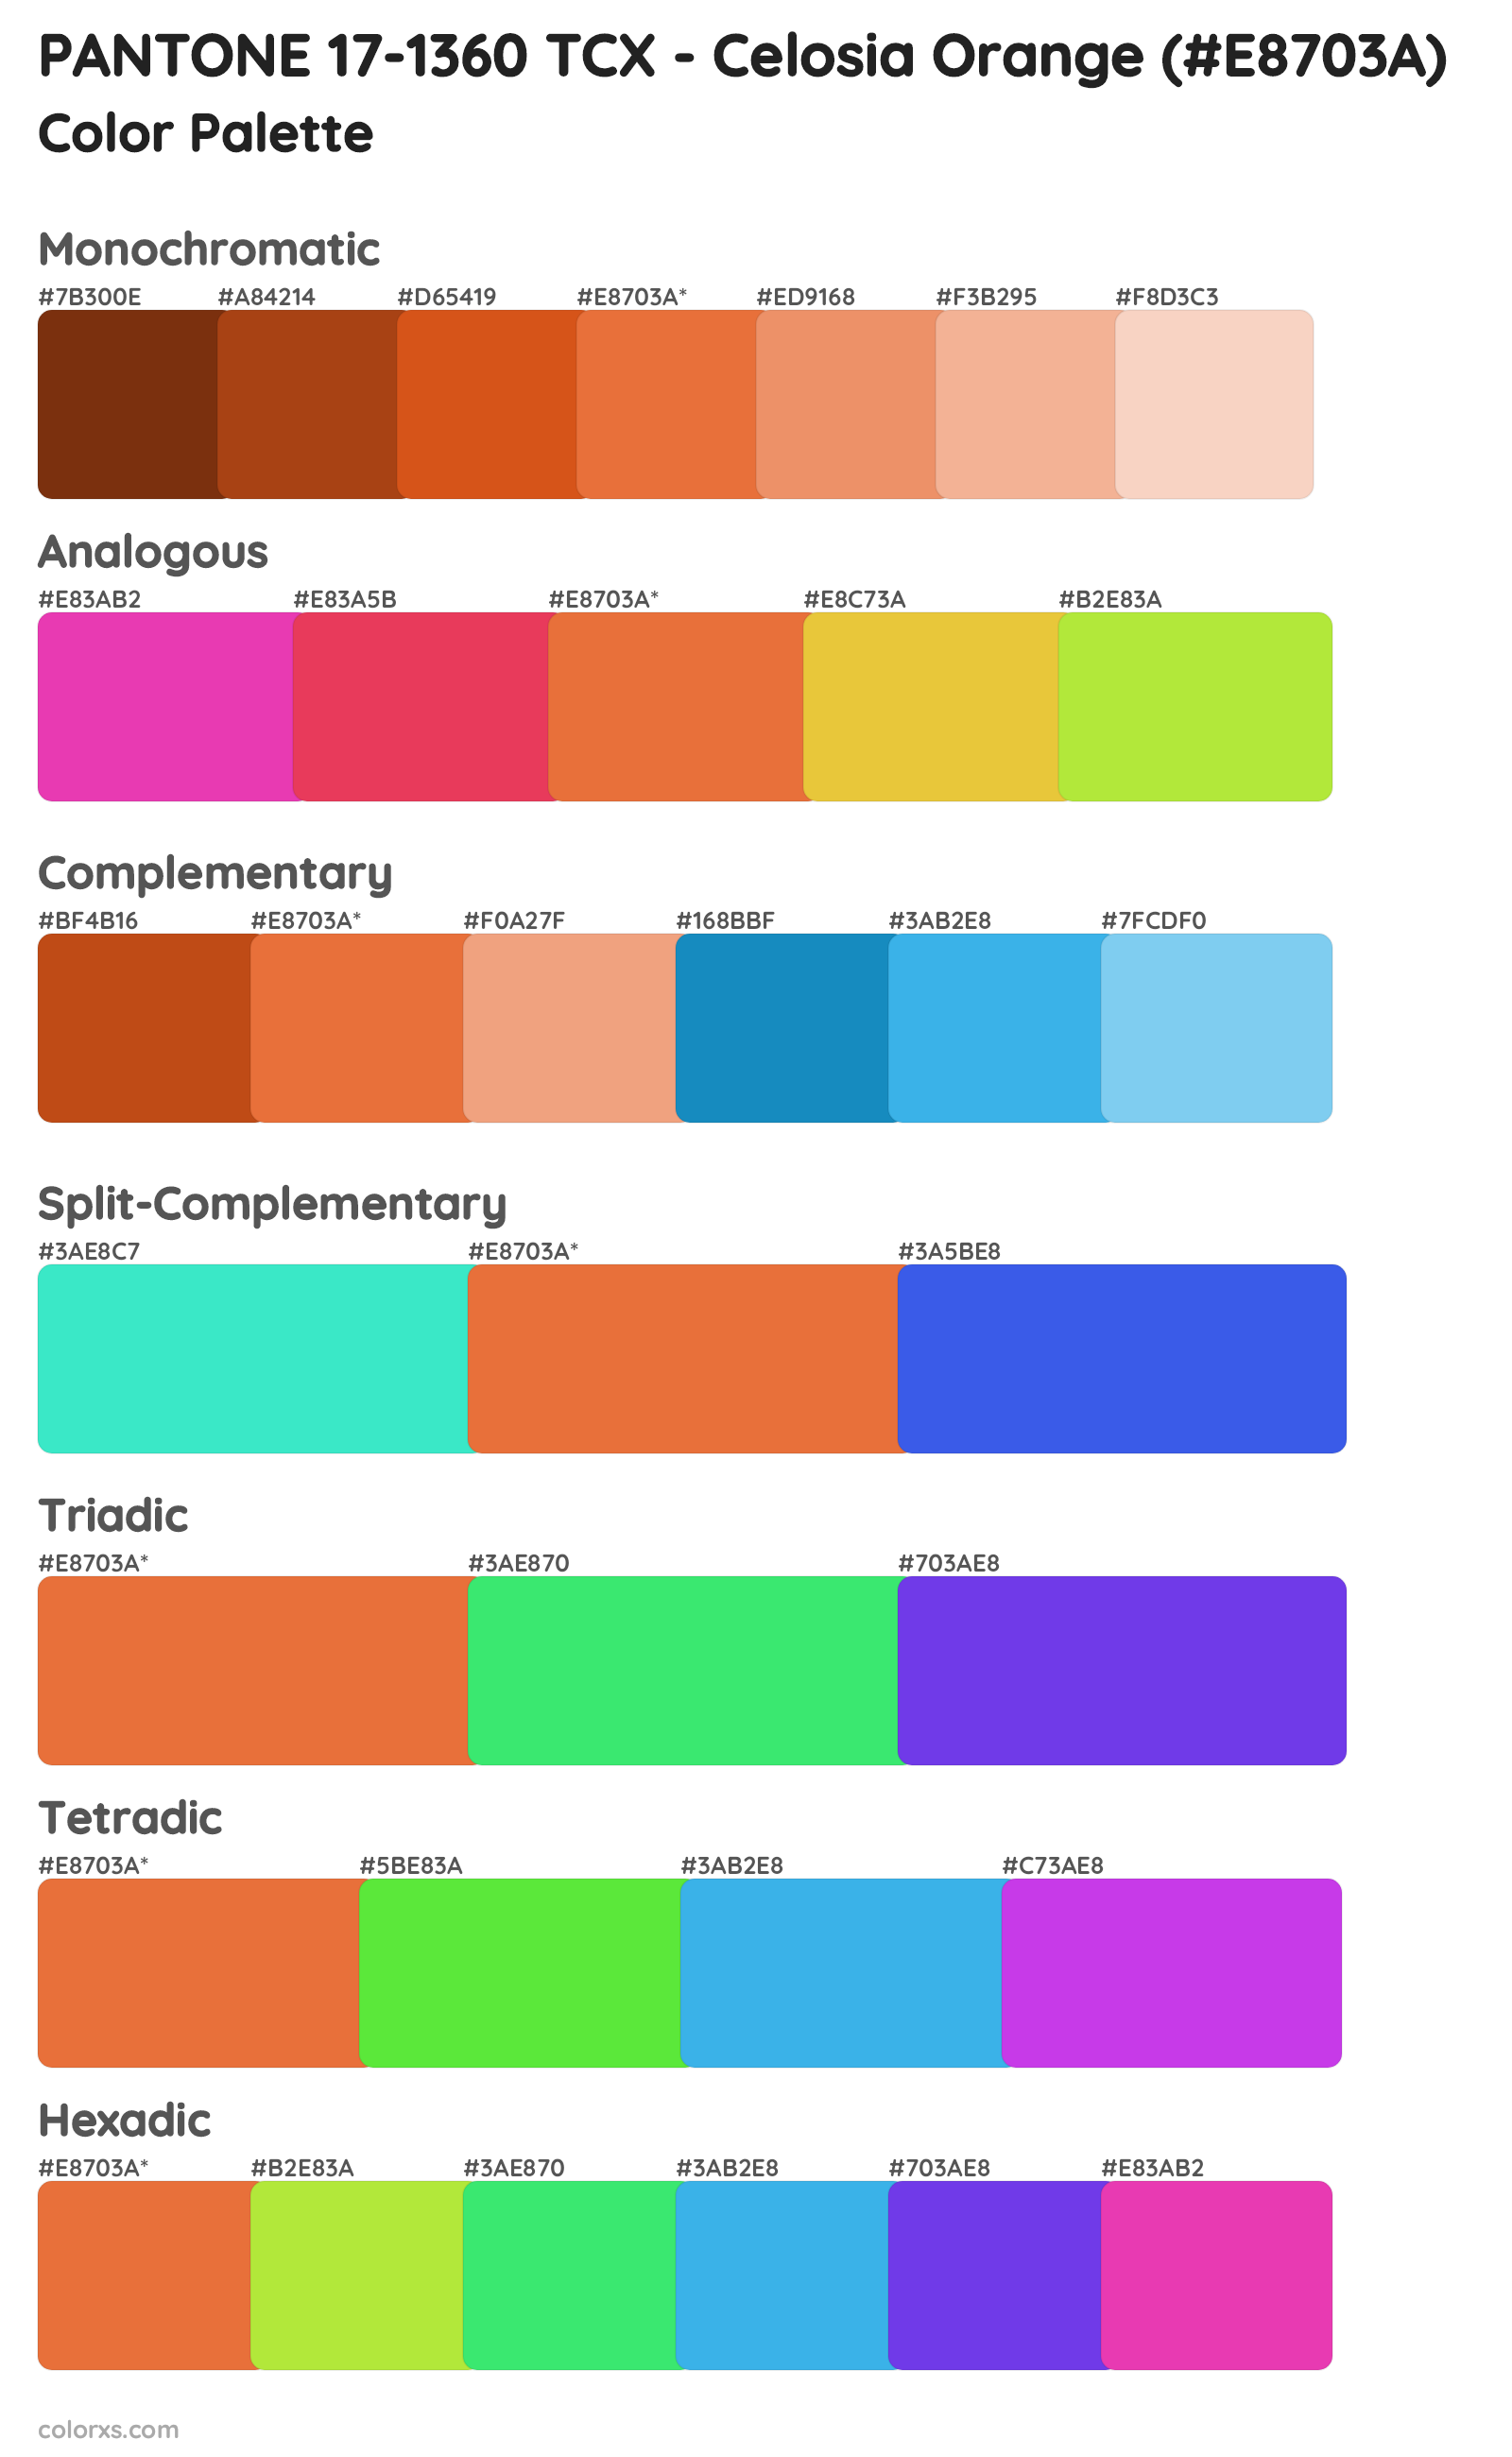 PANTONE 17-1360 TCX - Celosia Orange Color Scheme Palettes